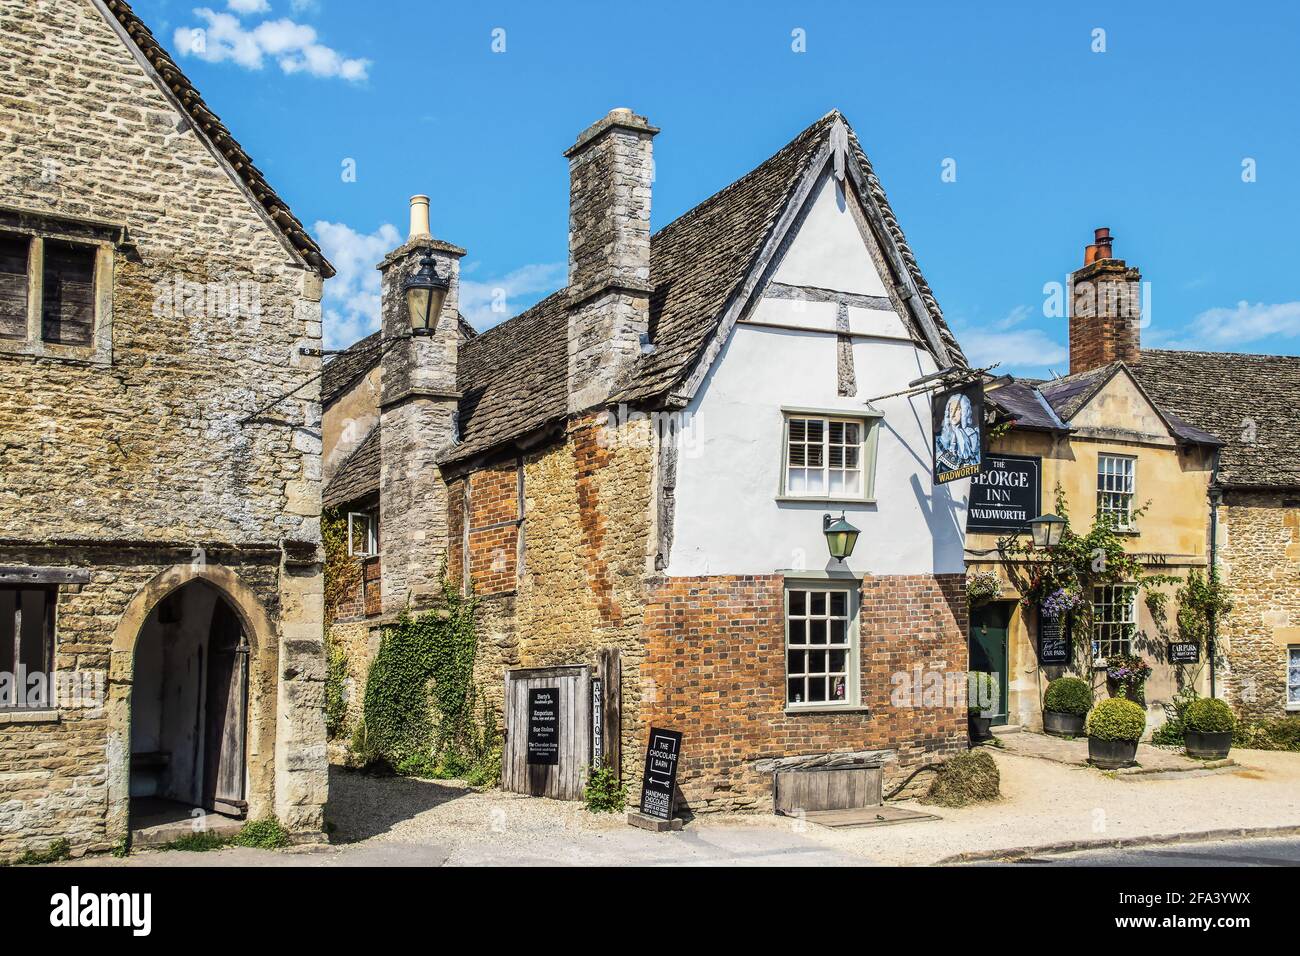 25 2019 juillet Lacock UK - scène de rue et allée Dans le village de Cotswold de Lacock où des scènes de Downton Abbey Ils ont été photographiés - le George Inn- Wadworth Banque D'Images